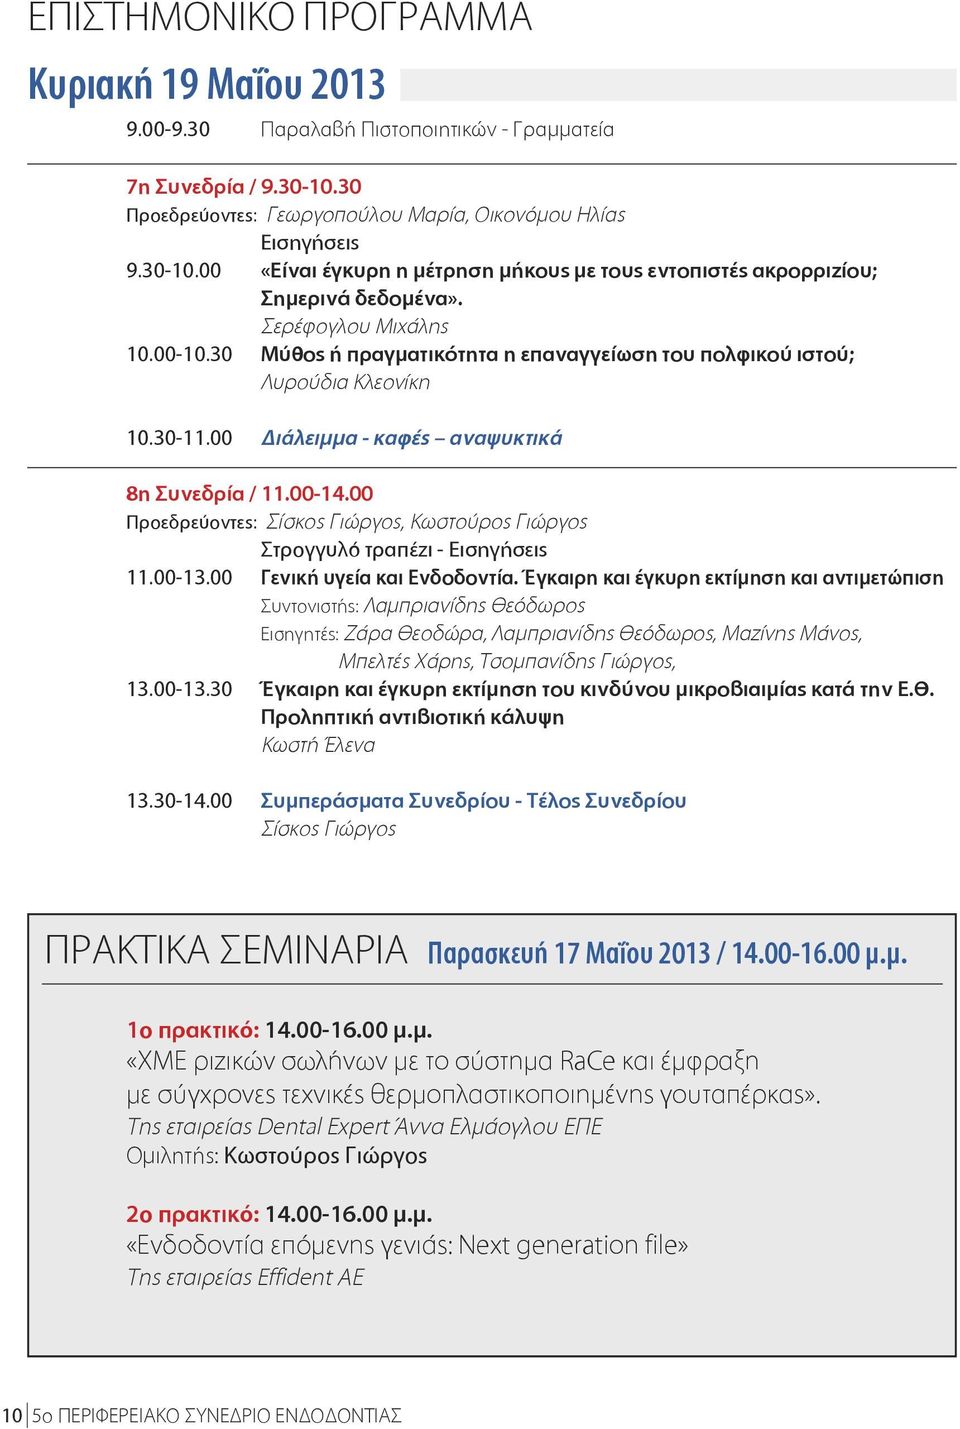 00 Προεδρεύοντες: Σίσκος Γιώργος, Κωστούρος Γιώργος - 11.00-13.00 Γενική υγεία και Ενδοδοντία.